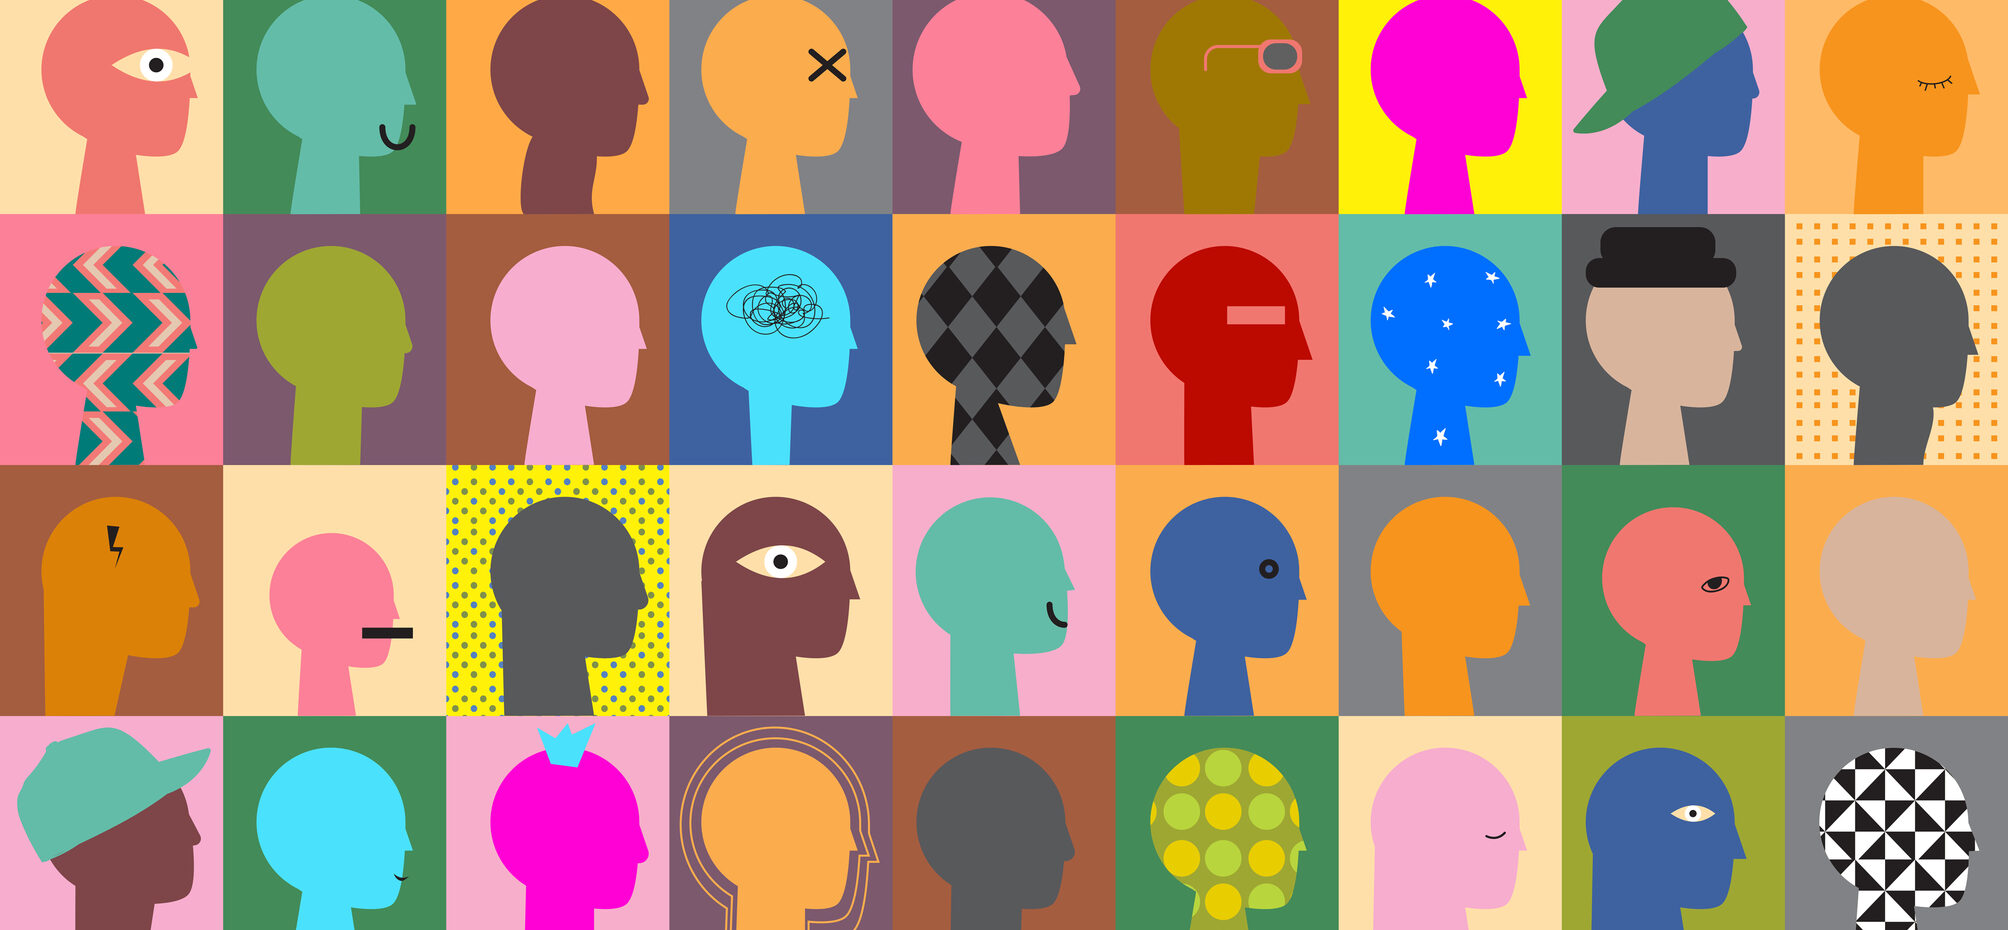 Das Bild zeigt eine Collage aus mehreren stilisierten, abstrakten Kopfprofilen in verschiedenen Farben und Mustern auf unterschiedlich farbigen Hintergründen. Die Profile weisen unterschiedliche Merkmale auf, wie z.B. sichtbare Gehirnstrukturen, Blitze, geometrische Muster oder einfache Gesichtszüge. Jedes Profil ist einzigartig gestaltet, was Vielfalt und Individualität symbolisieren könnte. Die Grafik könnte im Kontext von Diversität, Kreativität oder Persönlichkeit interpretiert werden.